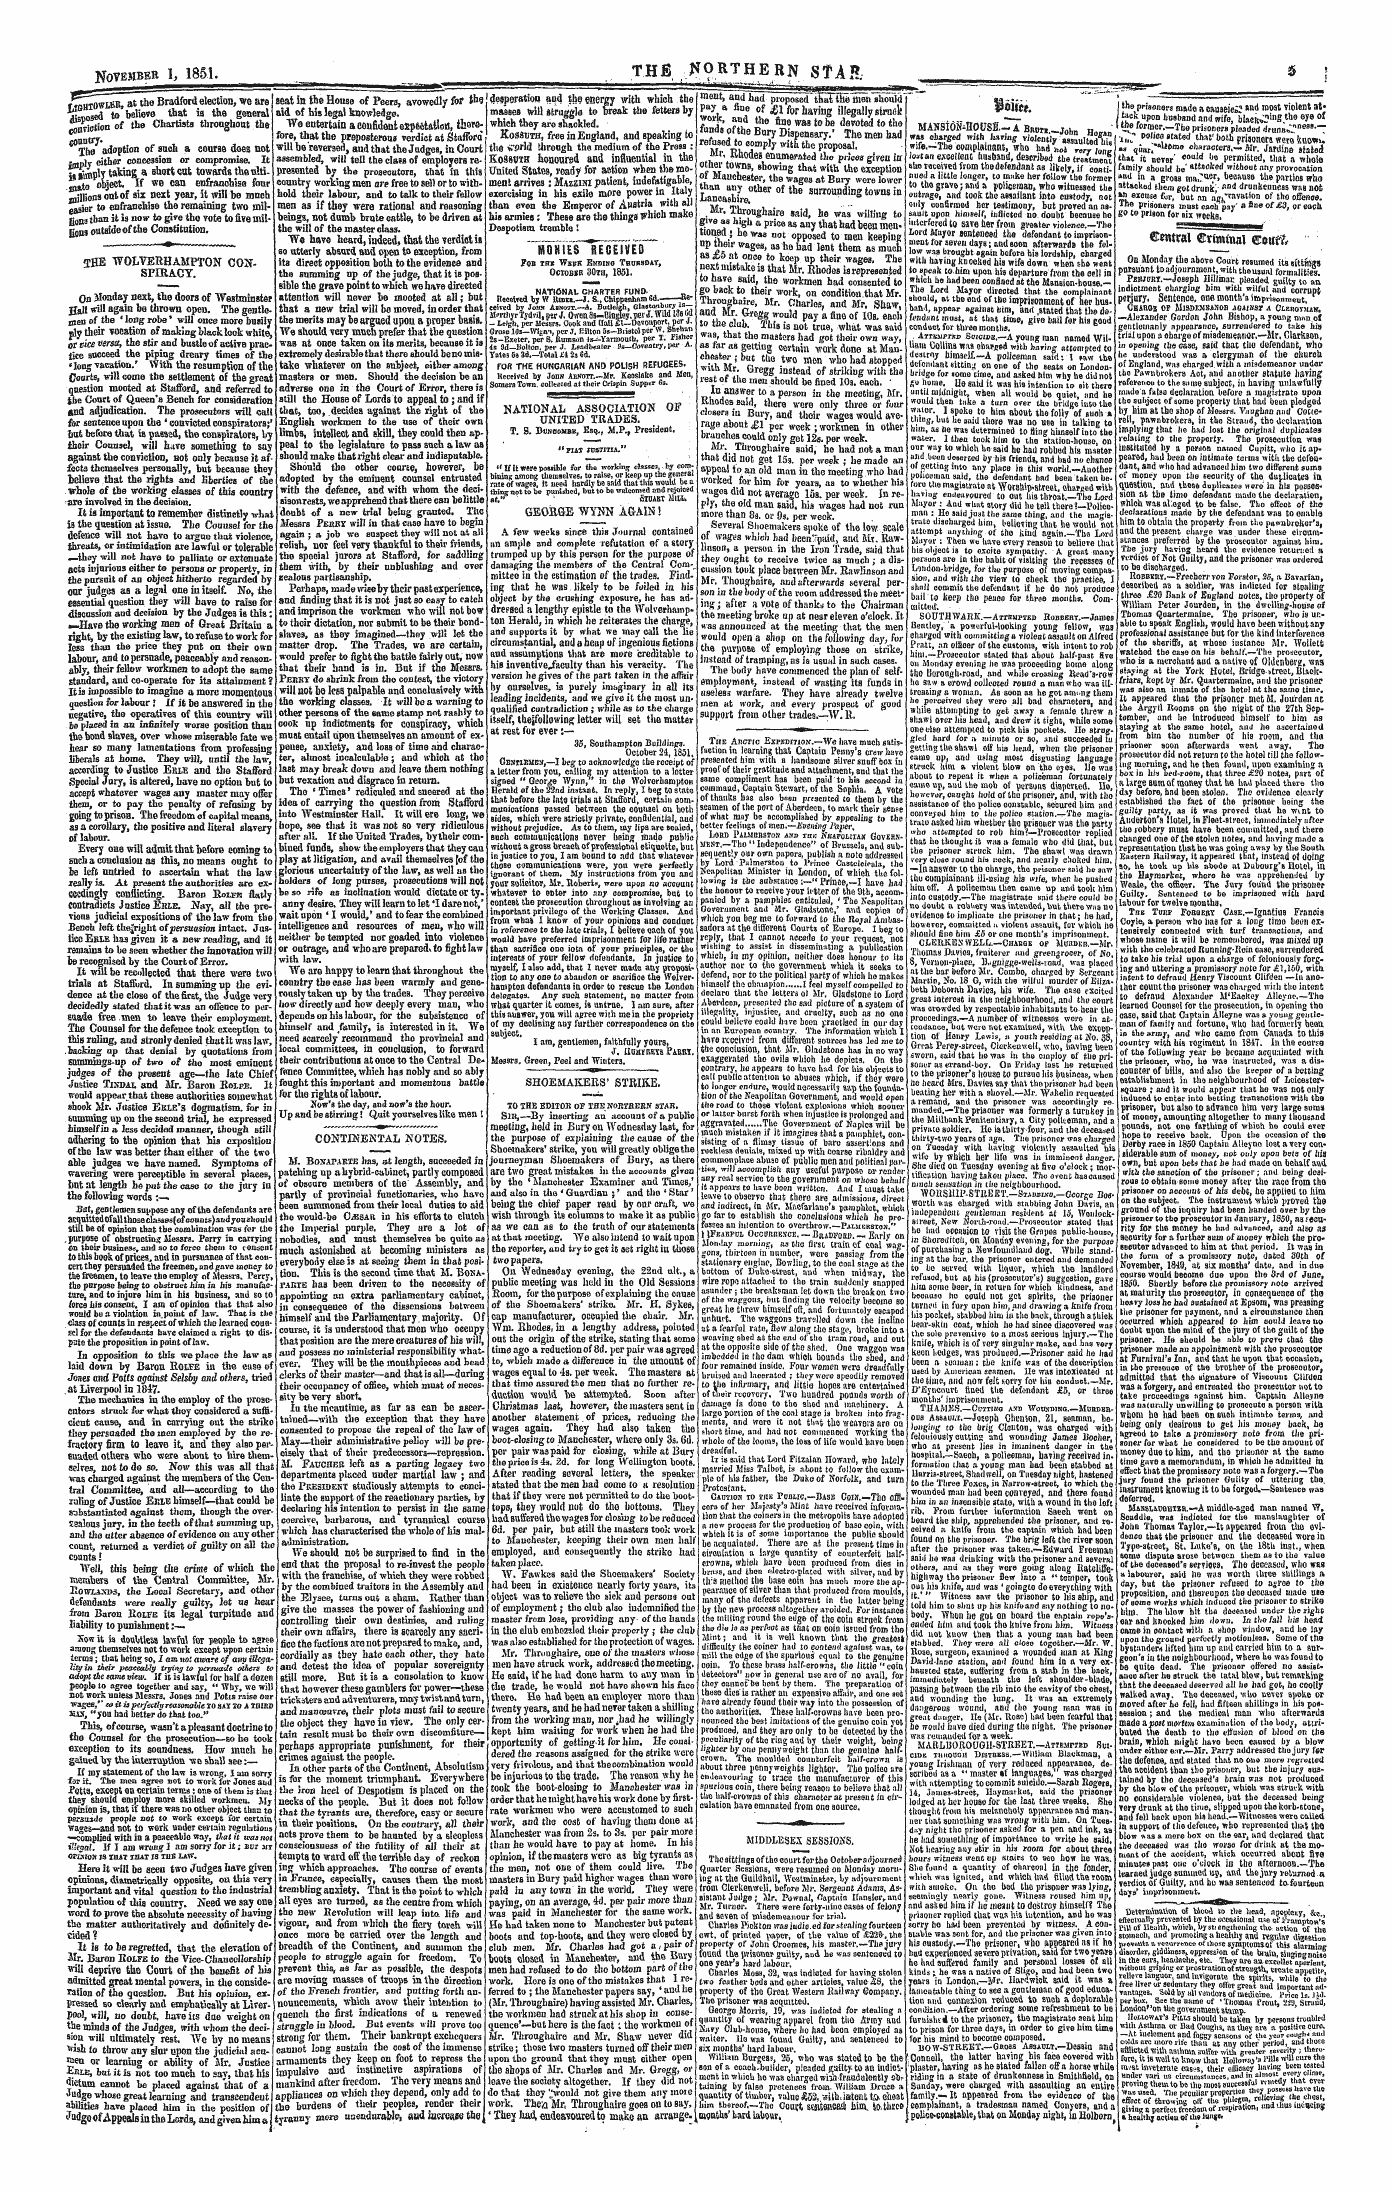 Northern Star (1837-1852): jS F Y, 1st edition - Smti*. _